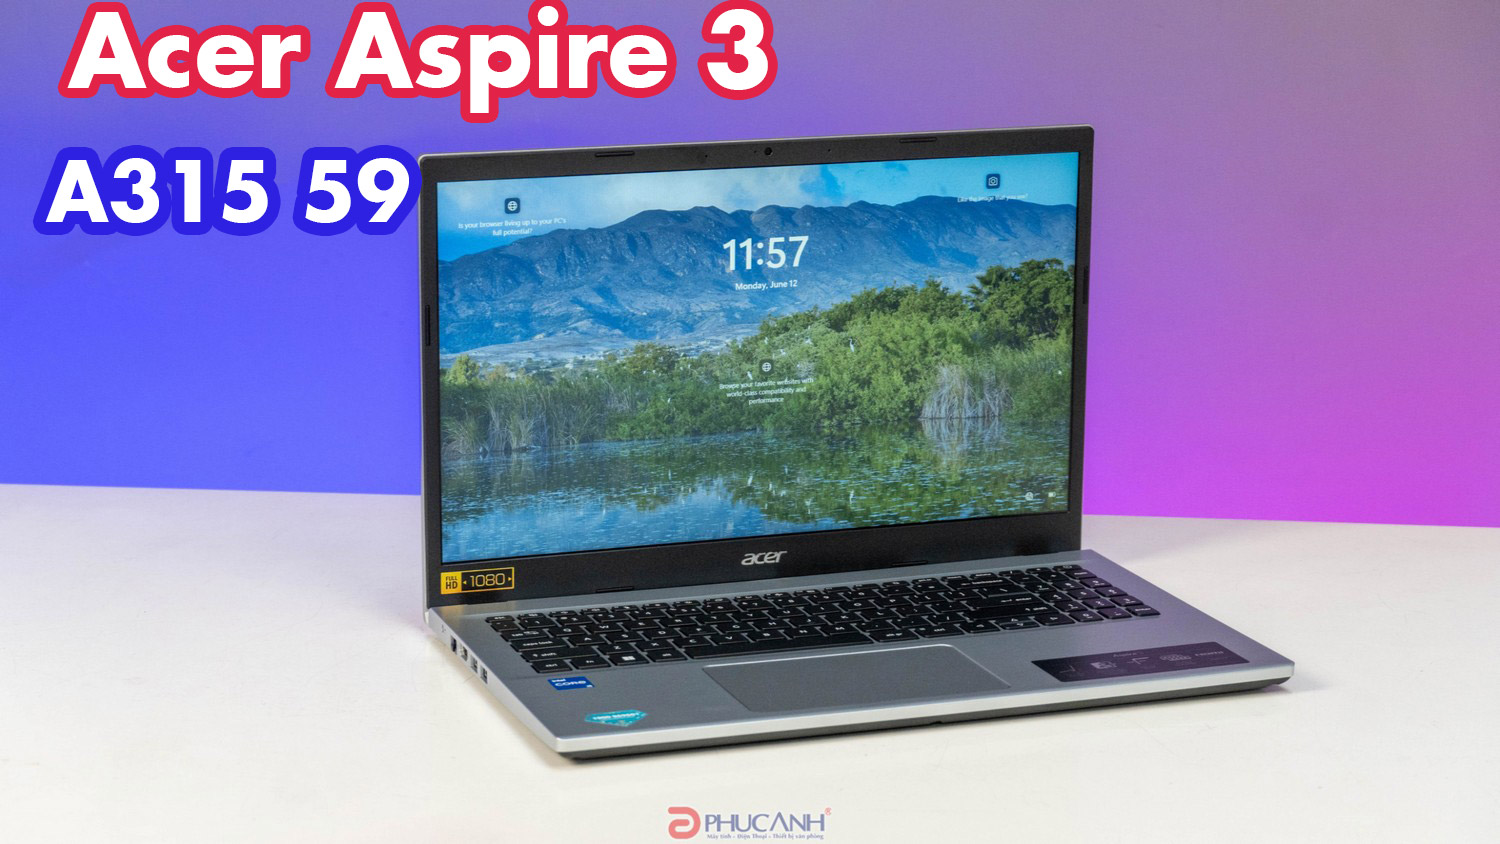 Đánh giá laptop Acer Aspire 3 A315 59 - thiết kế tinh tế, hiệu năng mạnh mẽ cho văn phòng 